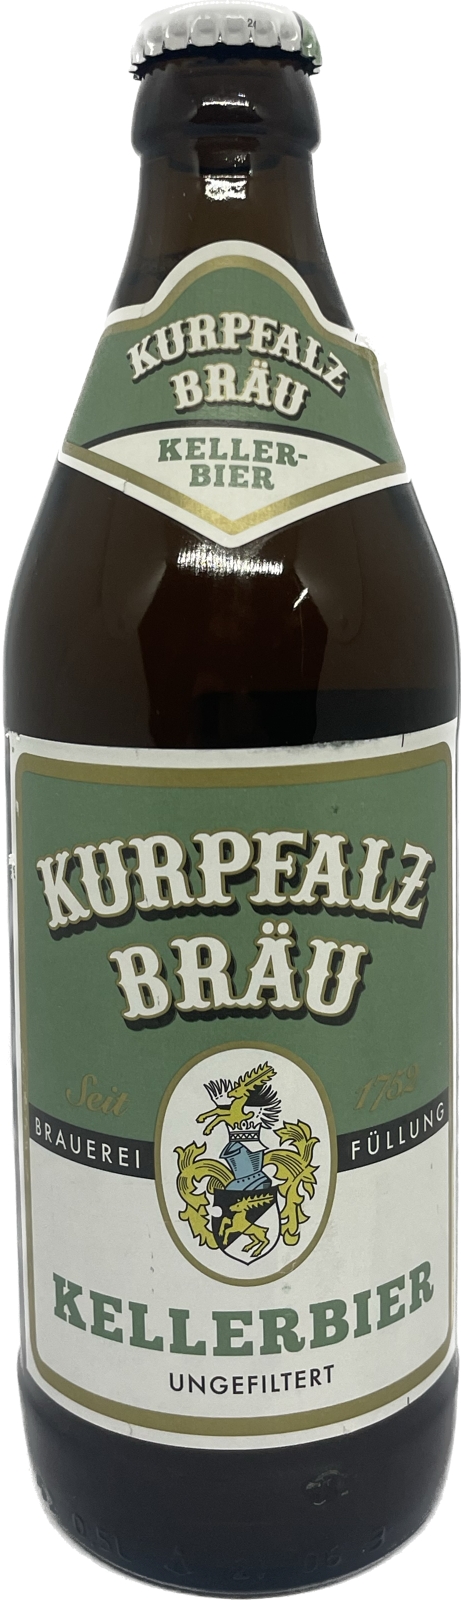 Kurpfalz brau. Kurpfalz Brau helles пиво. Курпфальц брой Келлербир. Курпфальц пиво пшеничное. Курпфальц брой ур Вайцен этикетка.